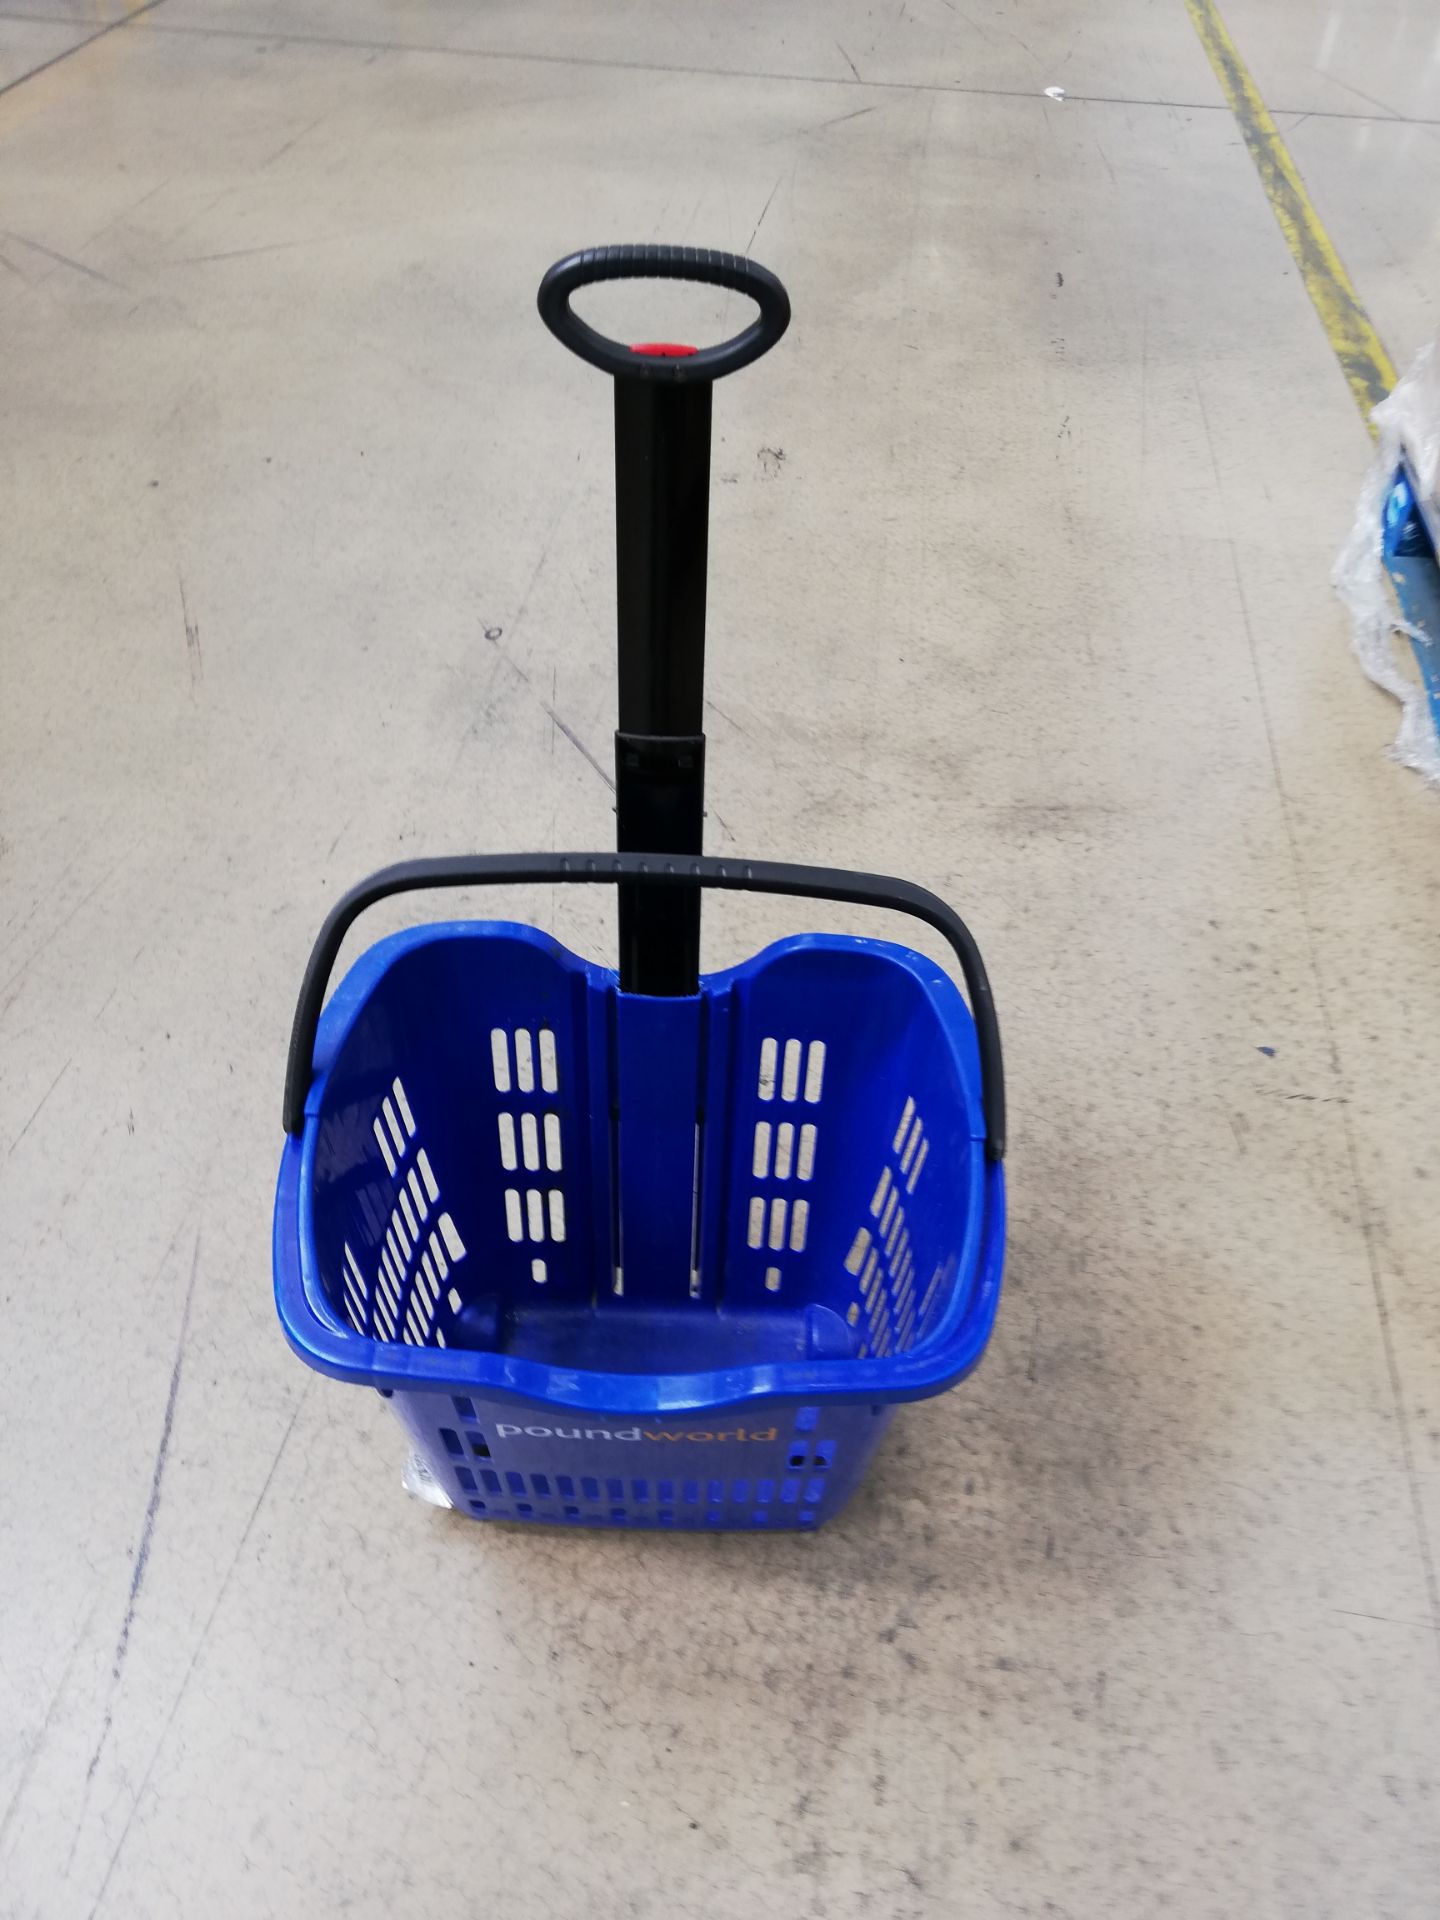 230 x ITP Poundworld Wheelie Shopping Baskets (Box - Image 3 of 3